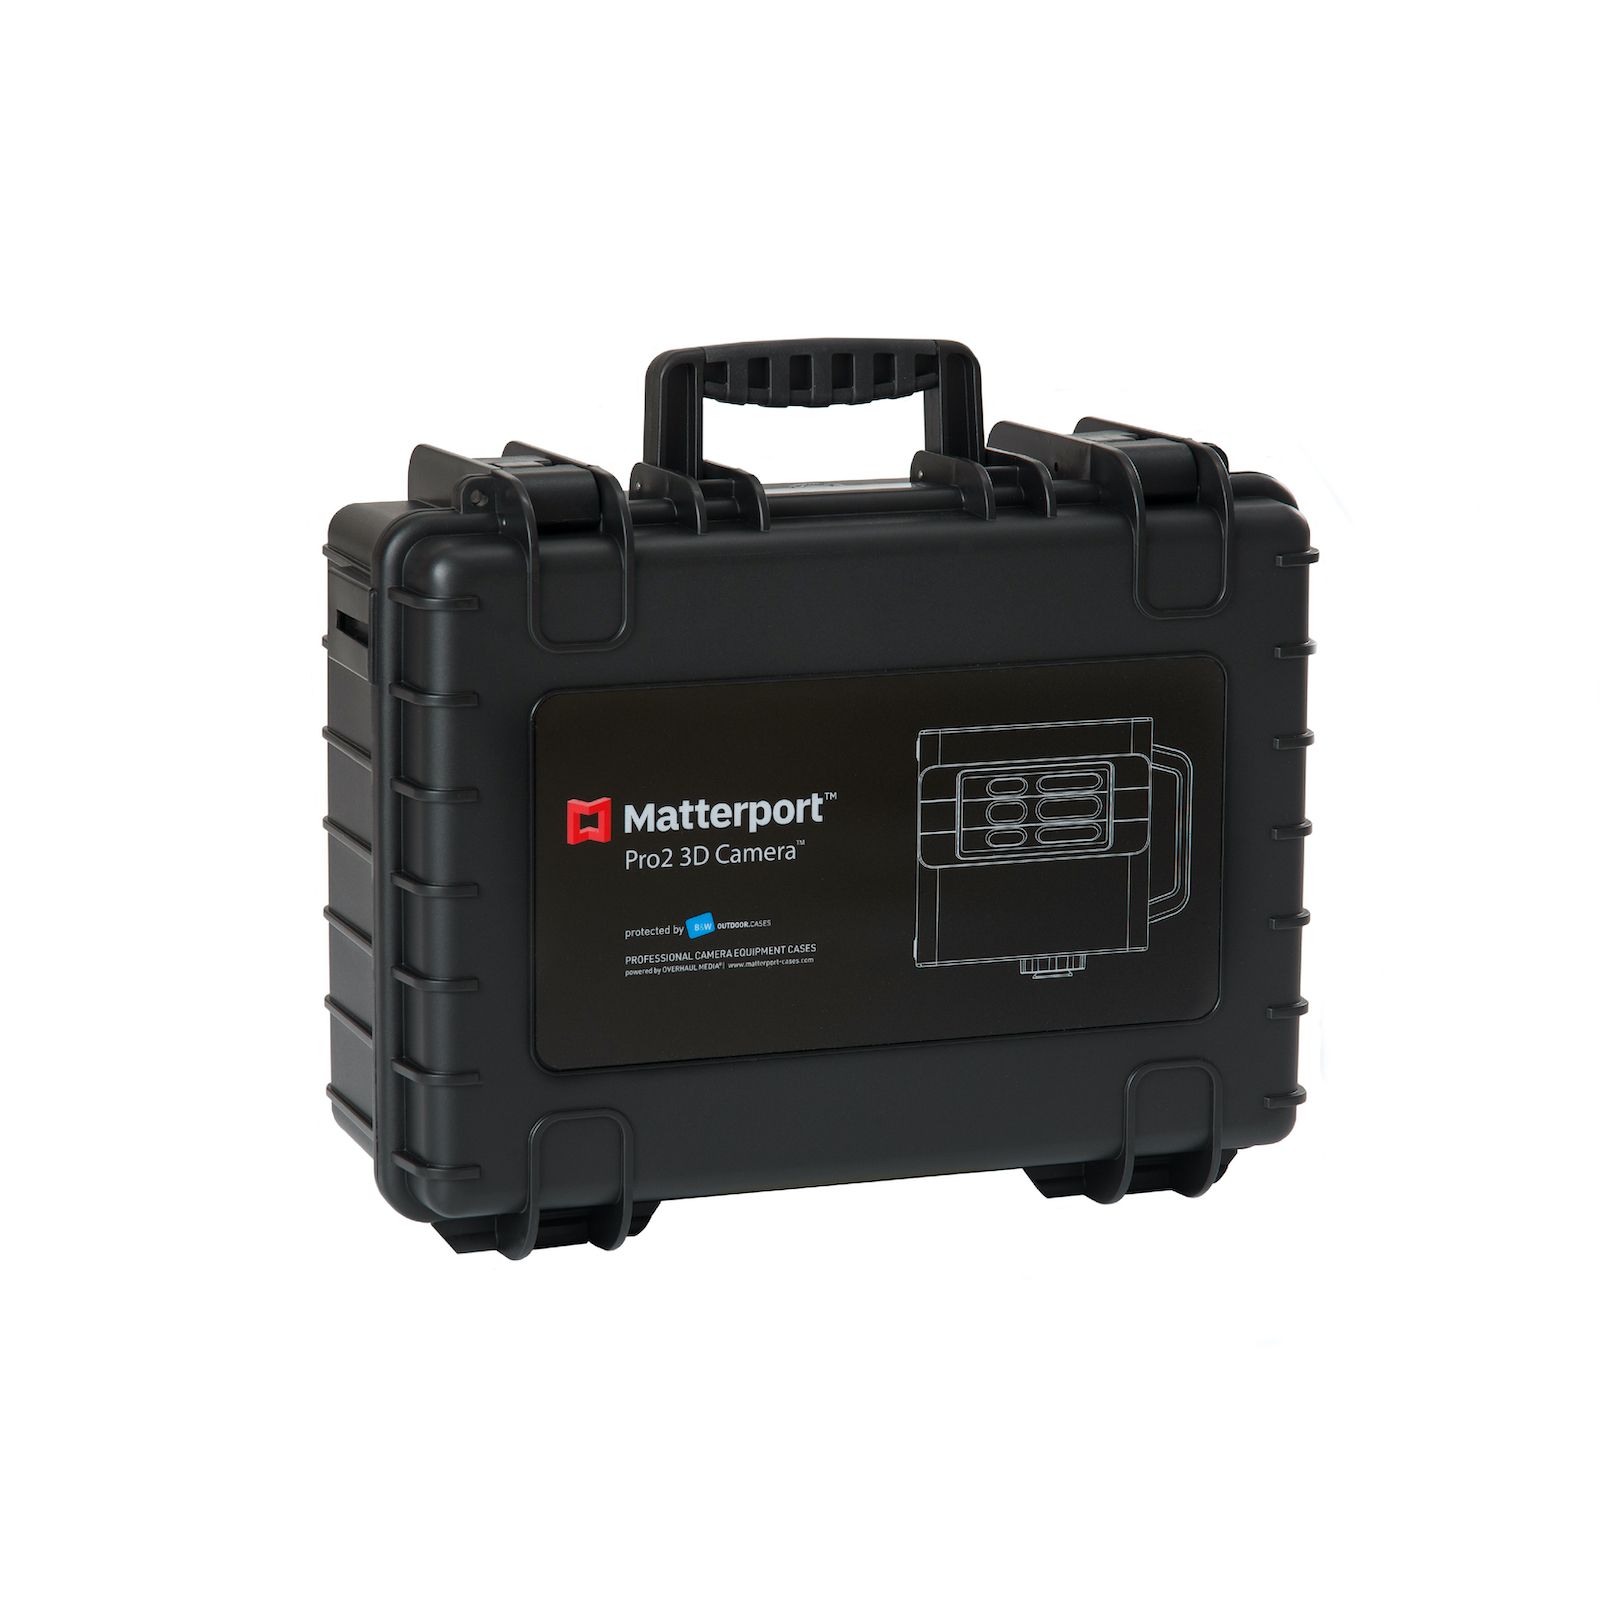 Kufr na 3D kameru Matterport Pro 2